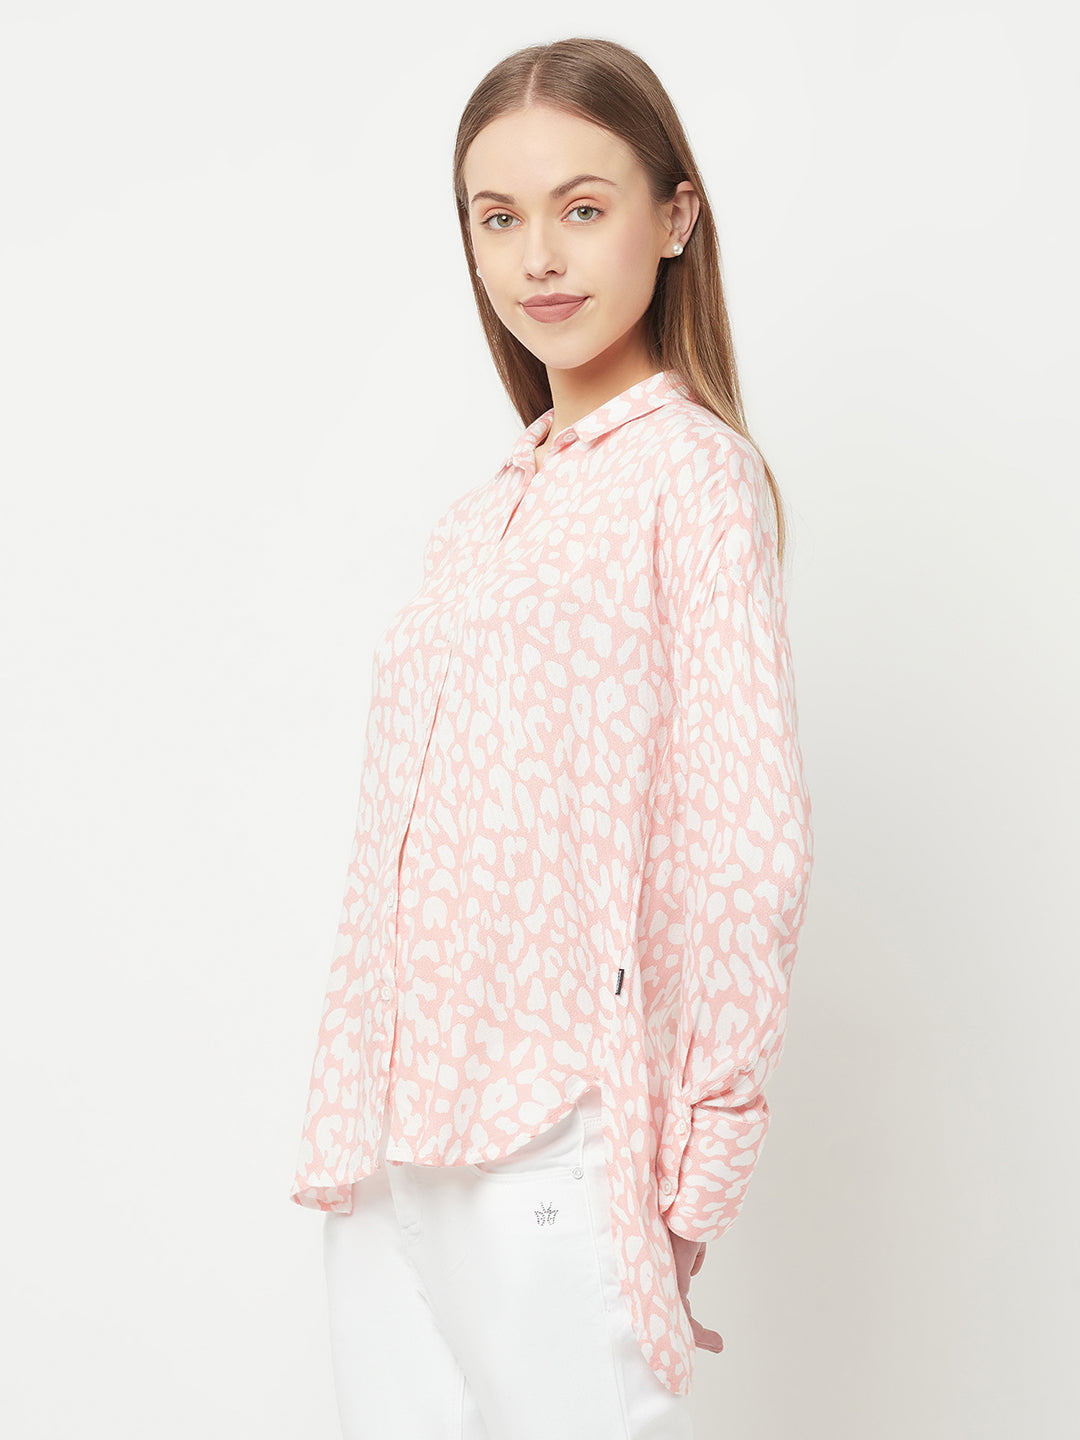 Peach Printed Casual Shirt - Women Shirts